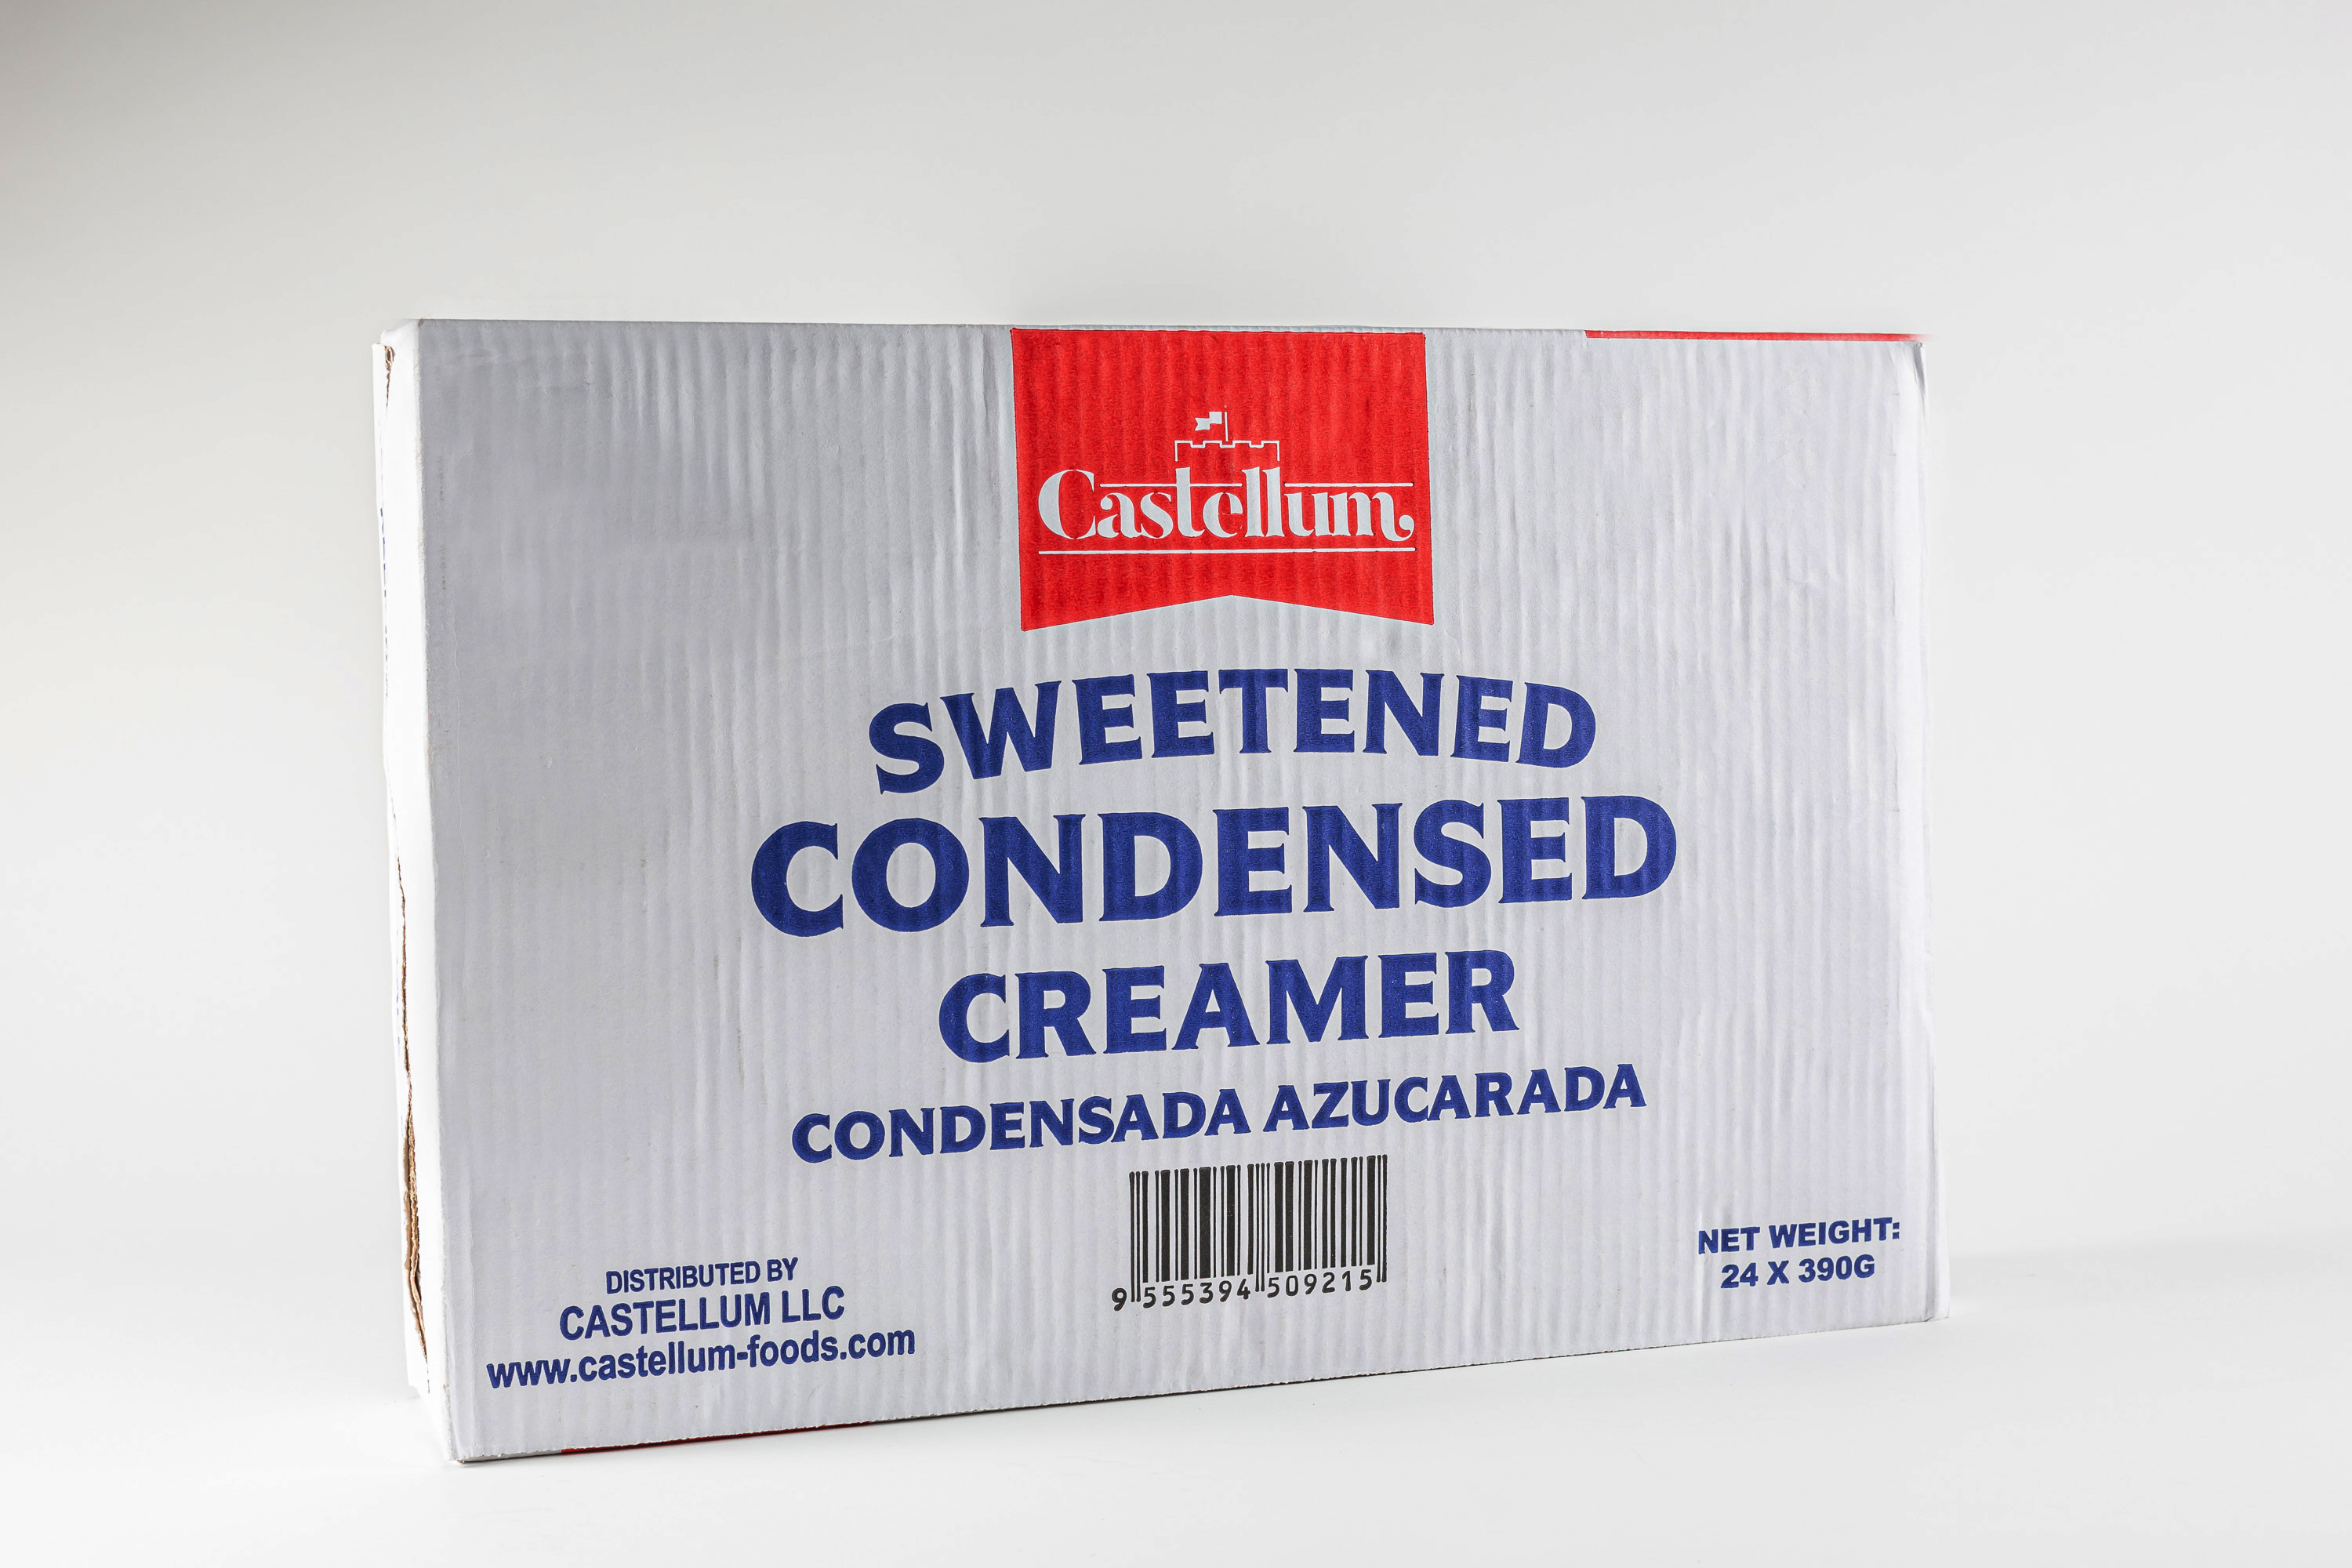 Castellum Sweetened Condensed Creamer